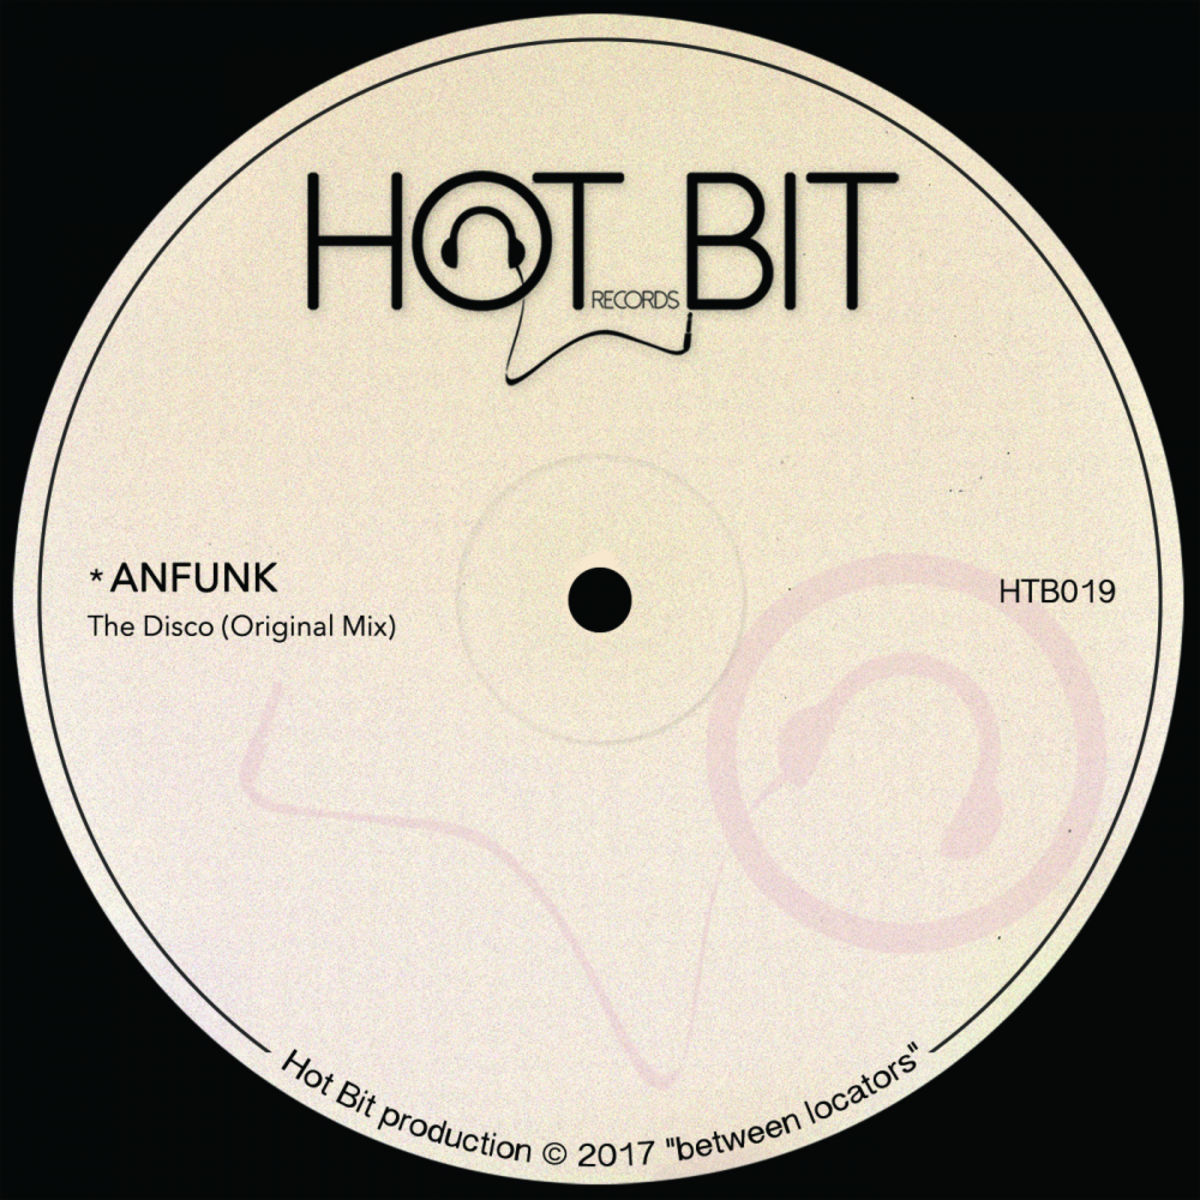 Anfunk - The Disco / Hot Bit